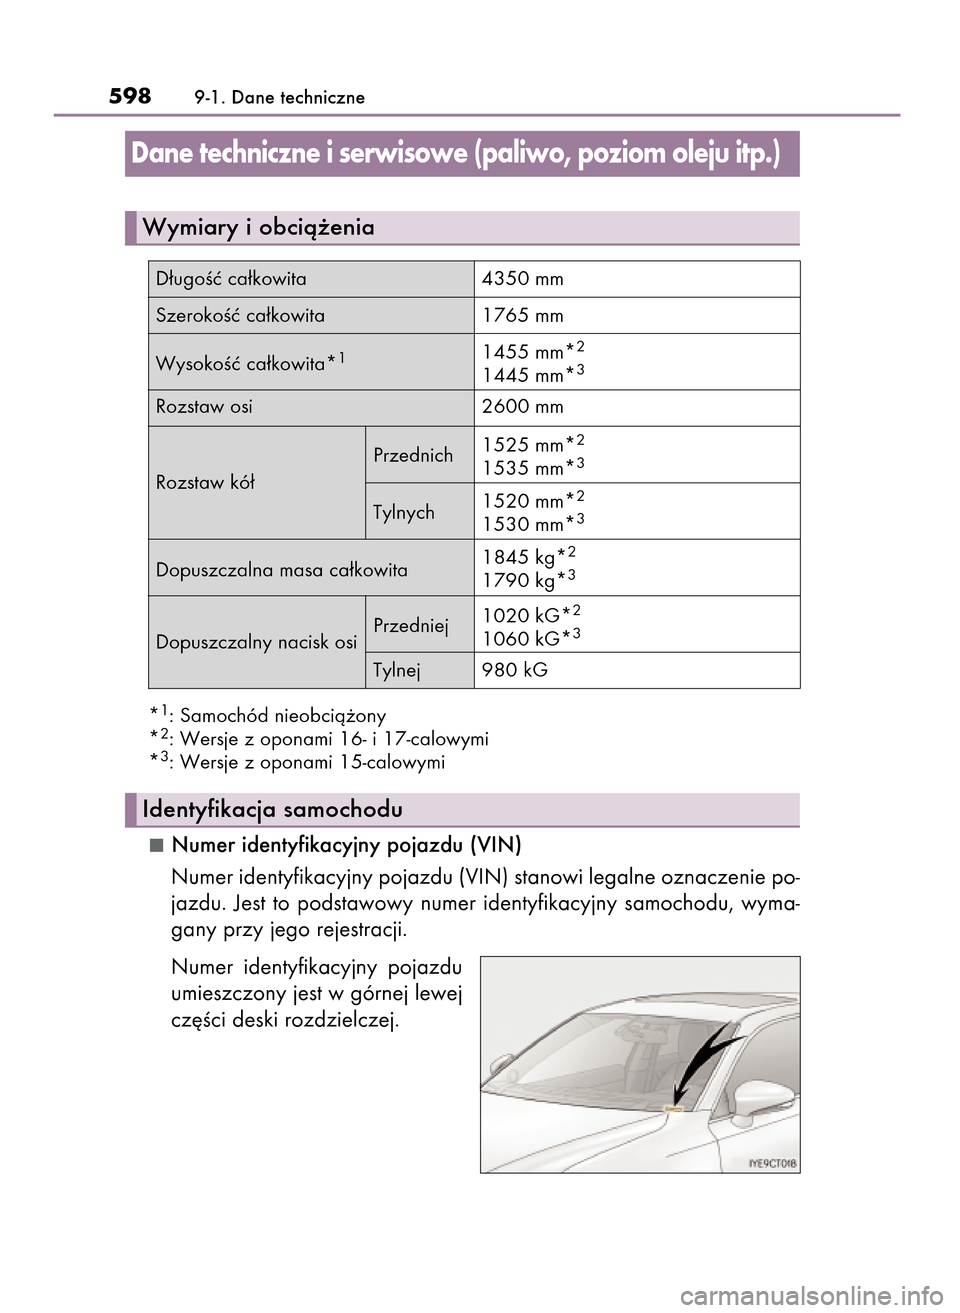 Lexus CT200h 2017  Instrukcja Obsługi (in Polish) *1: Samochód nieobcià˝ony
*2: Wersje z oponami 16- i 17-calowymi
*3: Wersje z oponami 15-calowymi
Numer identyfikacyjny pojazdu (VIN)
Numer identyfikacyjny pojazdu (VIN) stanowi legalne oznaczenie 